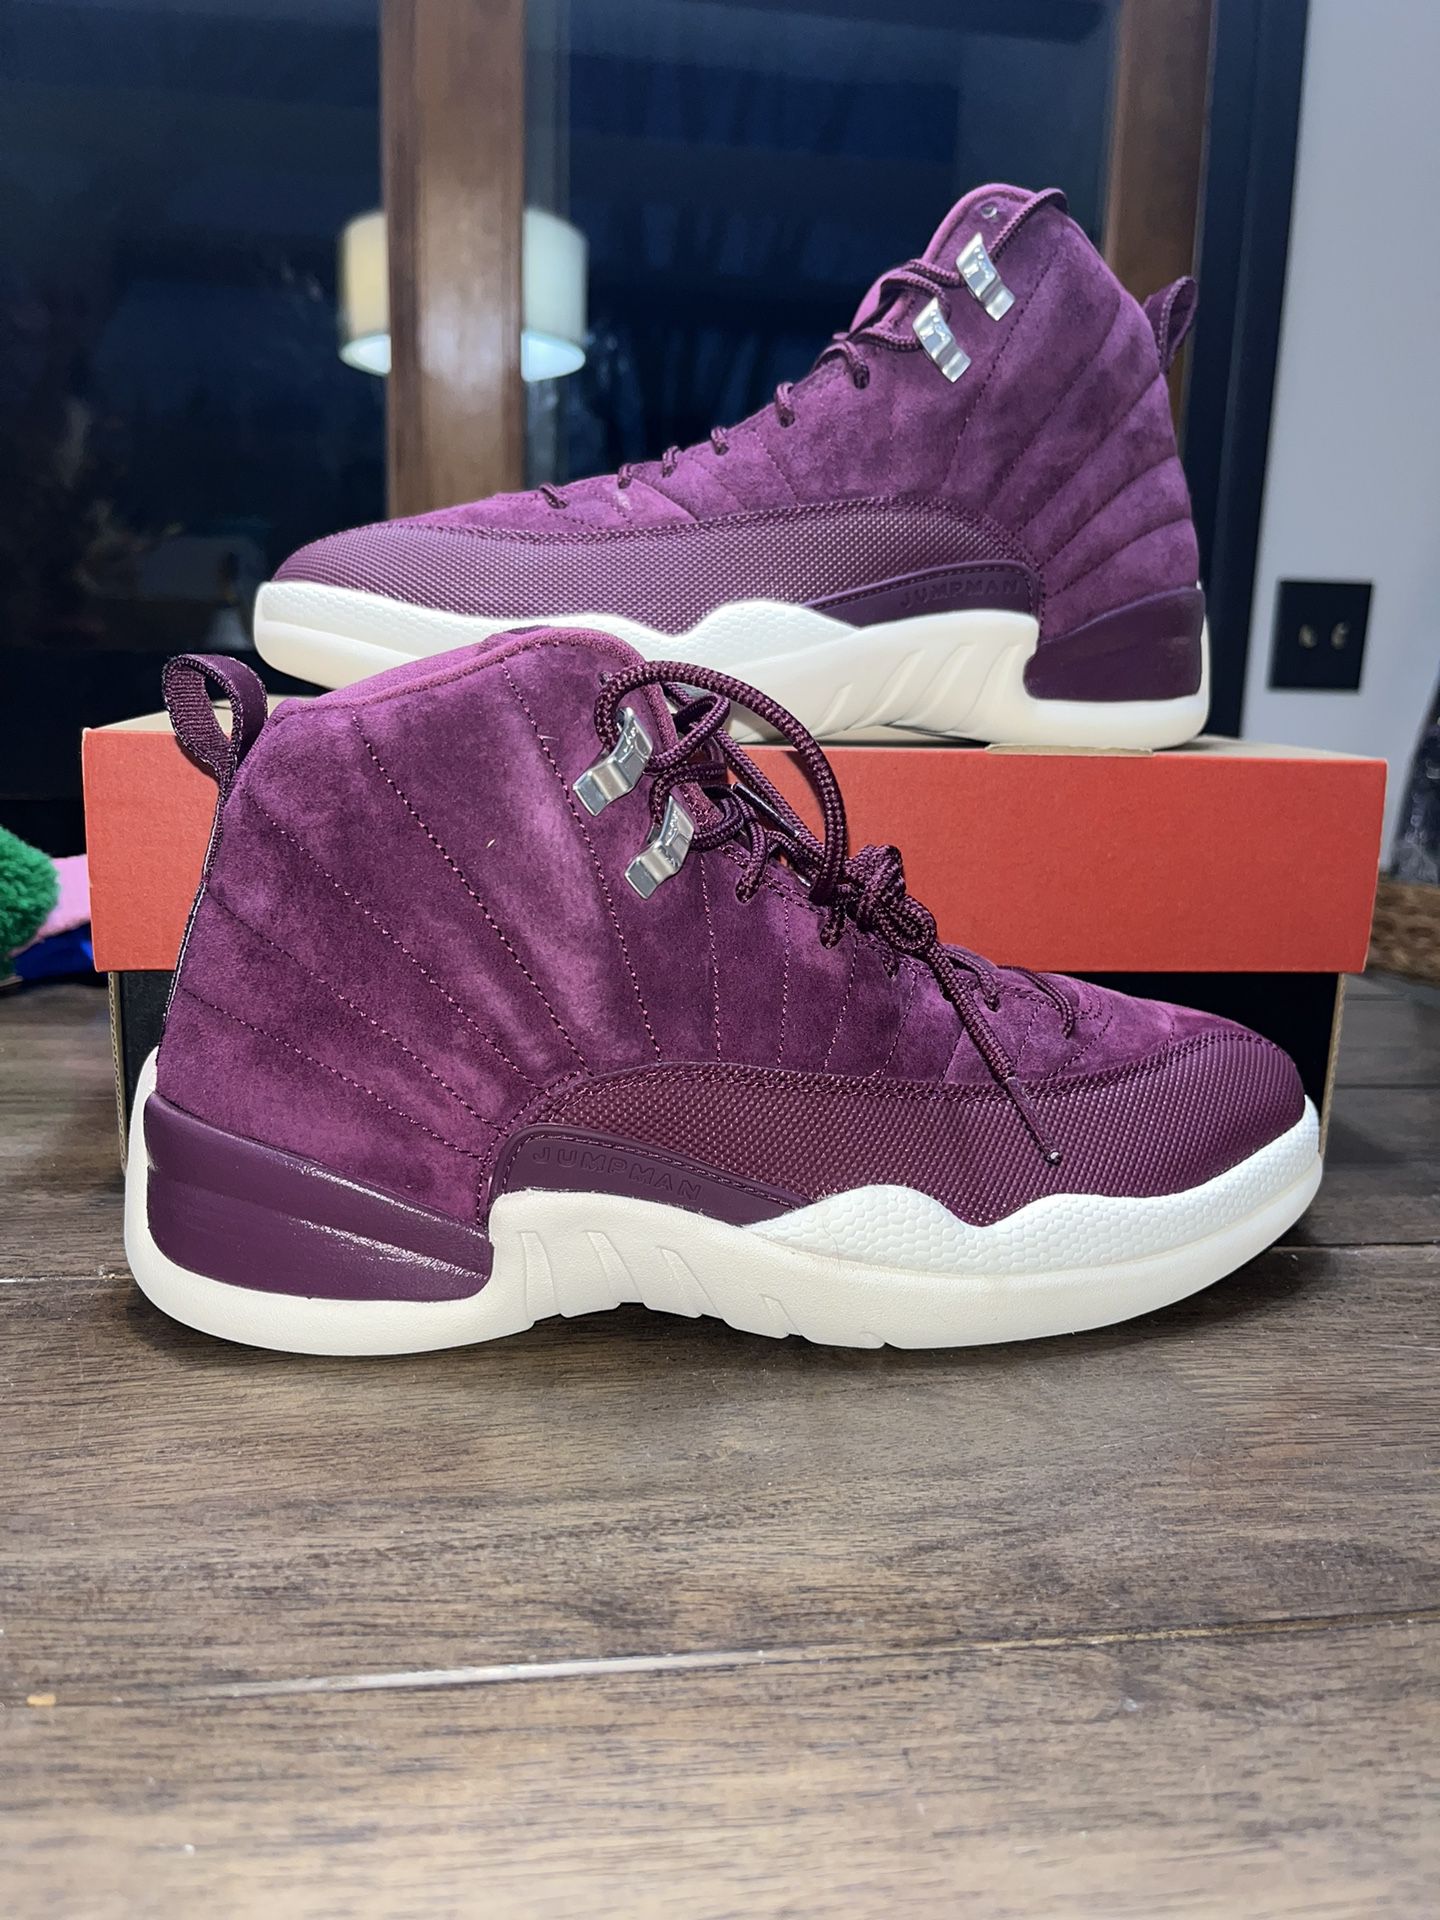 New Jordan 12, Bordeaux Size 10